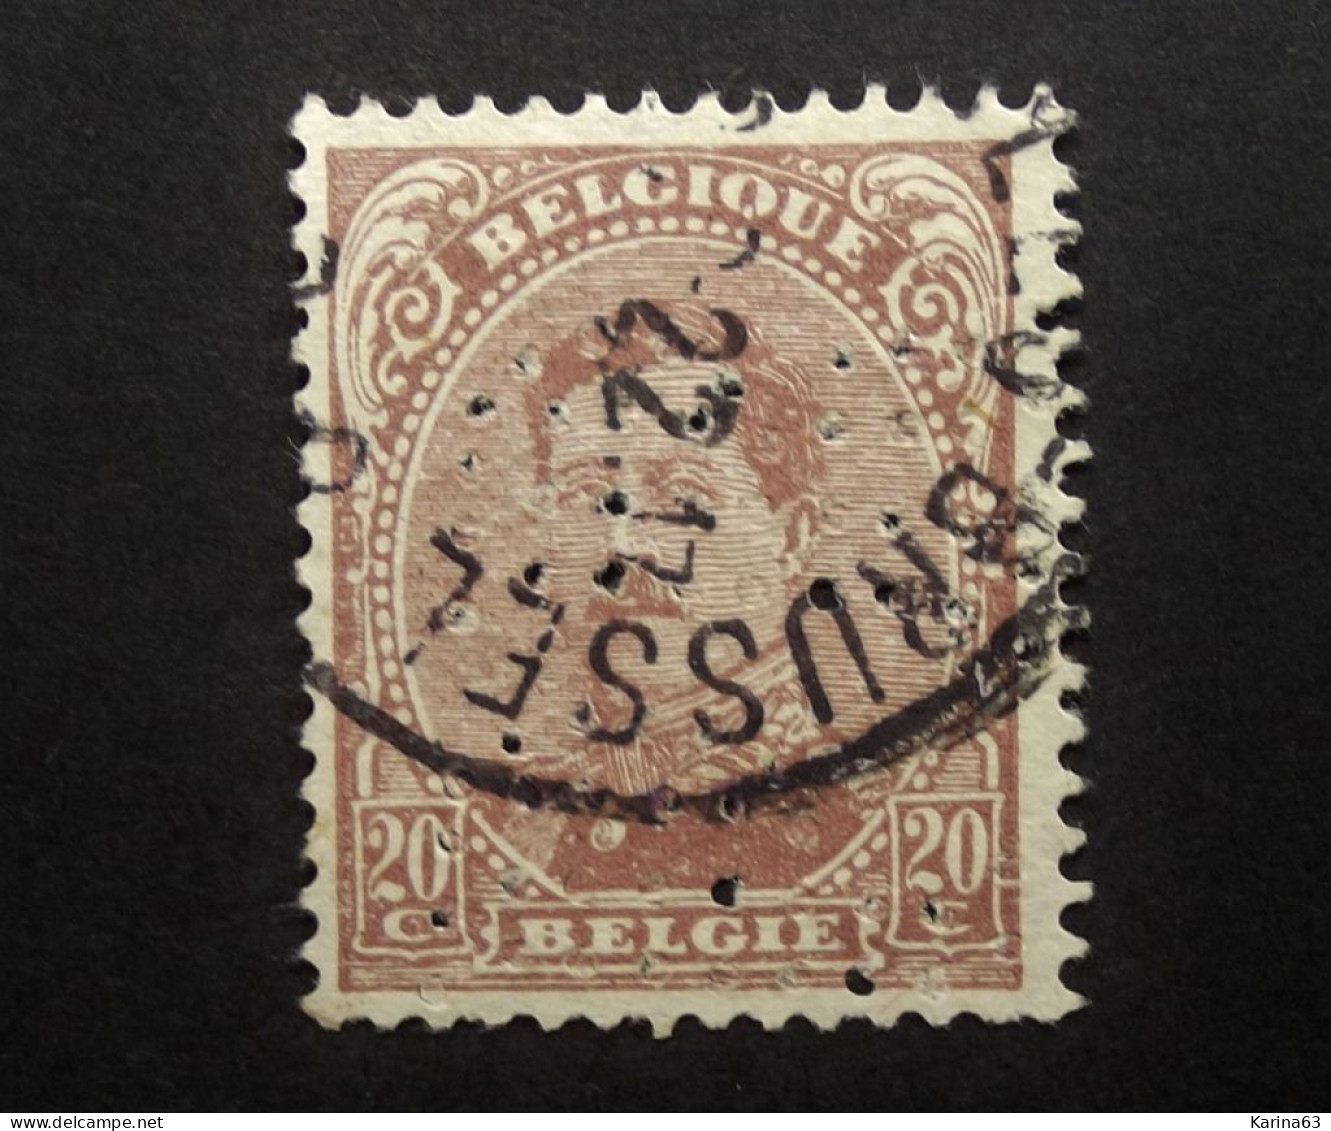 België - Belgique  Perfin - Perforé - P R - Cie D'Assurance Les Propriétaires Réunies, Liège - COB 140 Cancelled - 1909-34